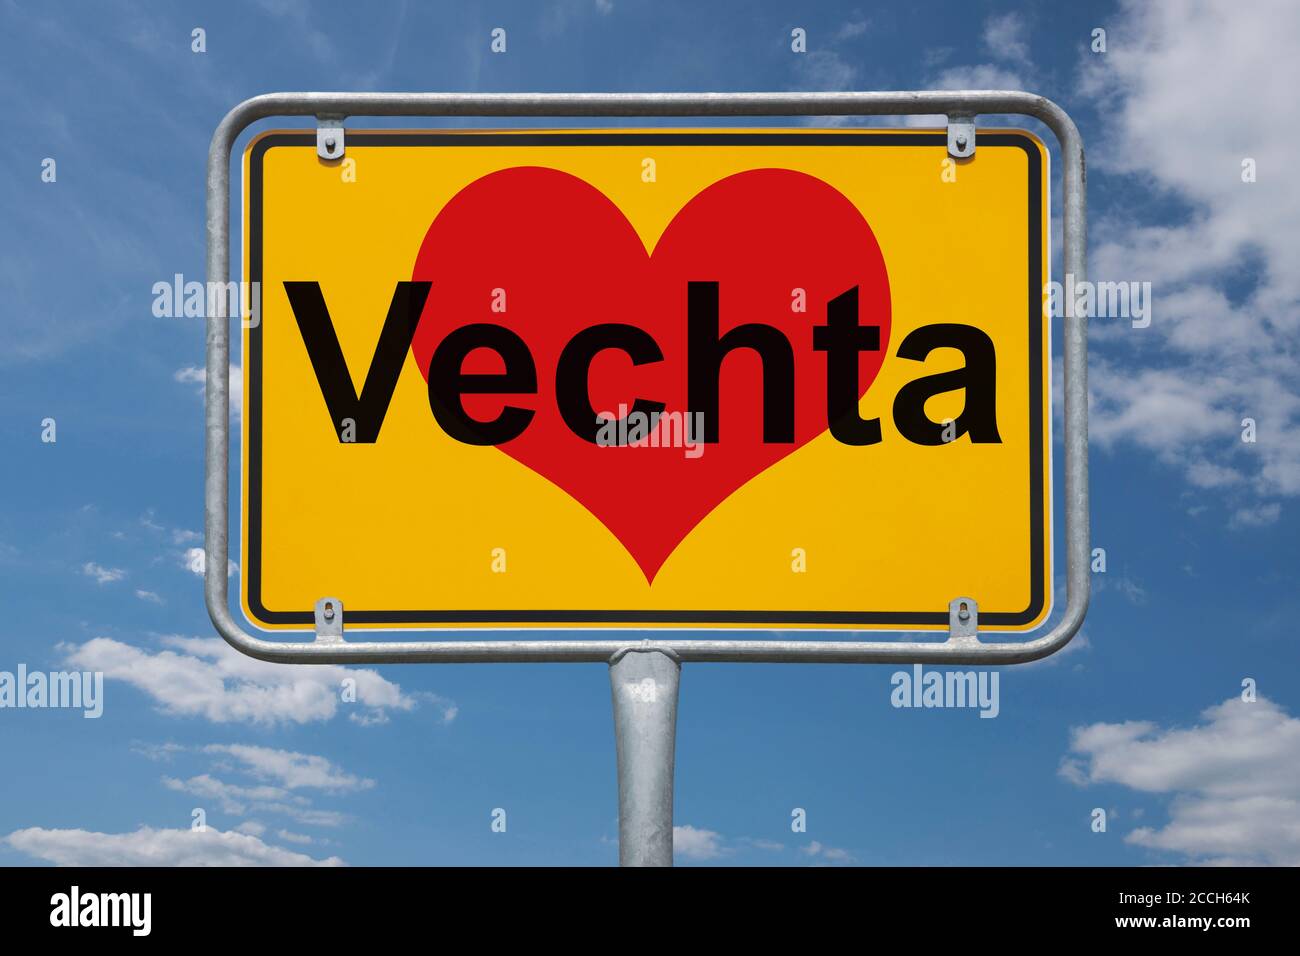 Ortstafel Vechta, Niedersachsen, Deutschland | Place name sign Vechta, Lower Saxony, Germany, Europe Stock Photo